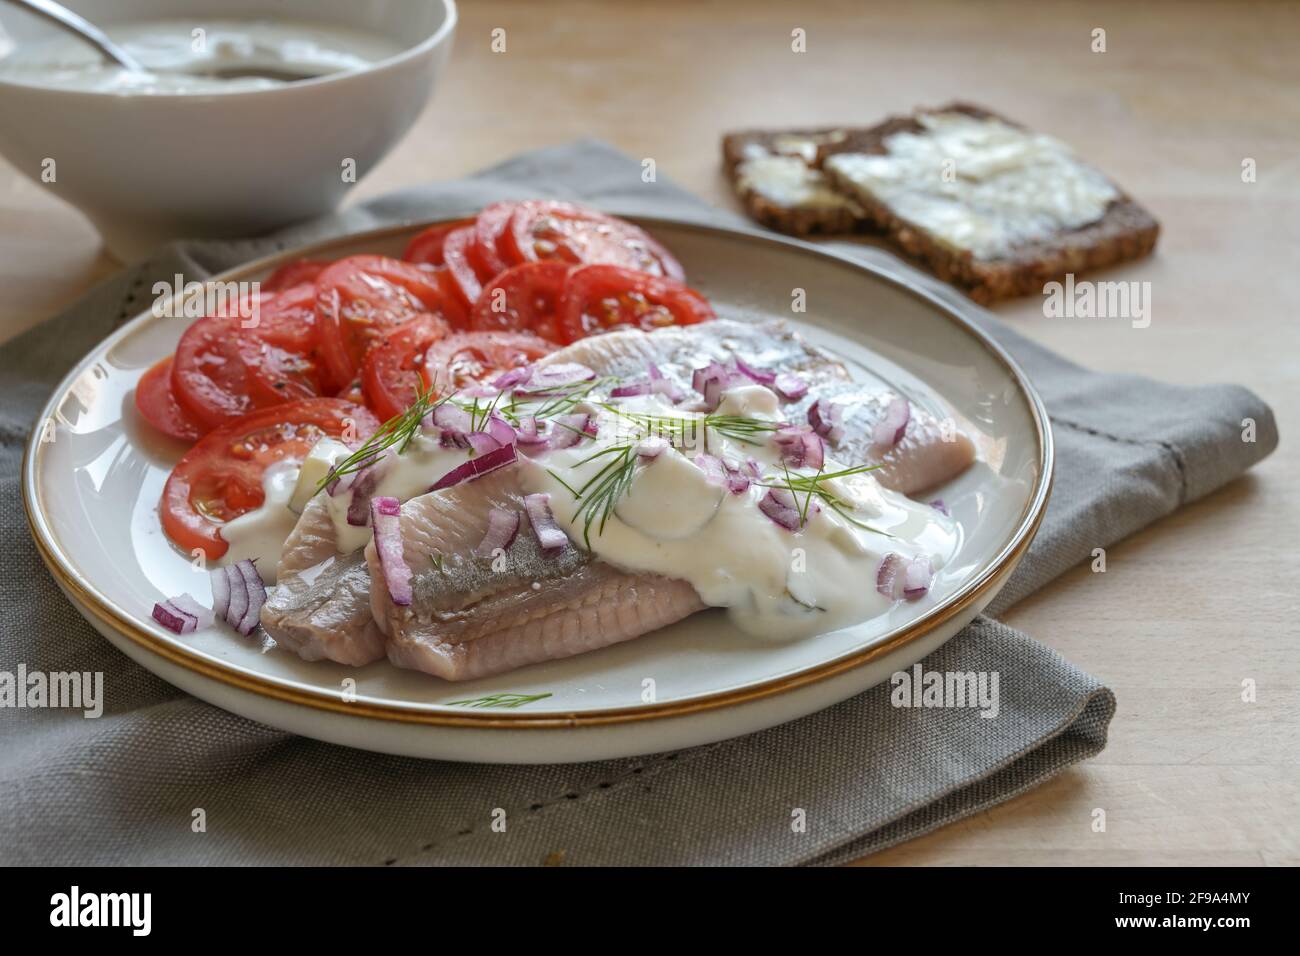 Filetti tradizionali di aringhe salate olandesi chiamati anche maatje con salsa alla crema, cipolle rosse, guarnitura di aneto e insalata di pomodoro servita su un piatto di legno Foto Stock